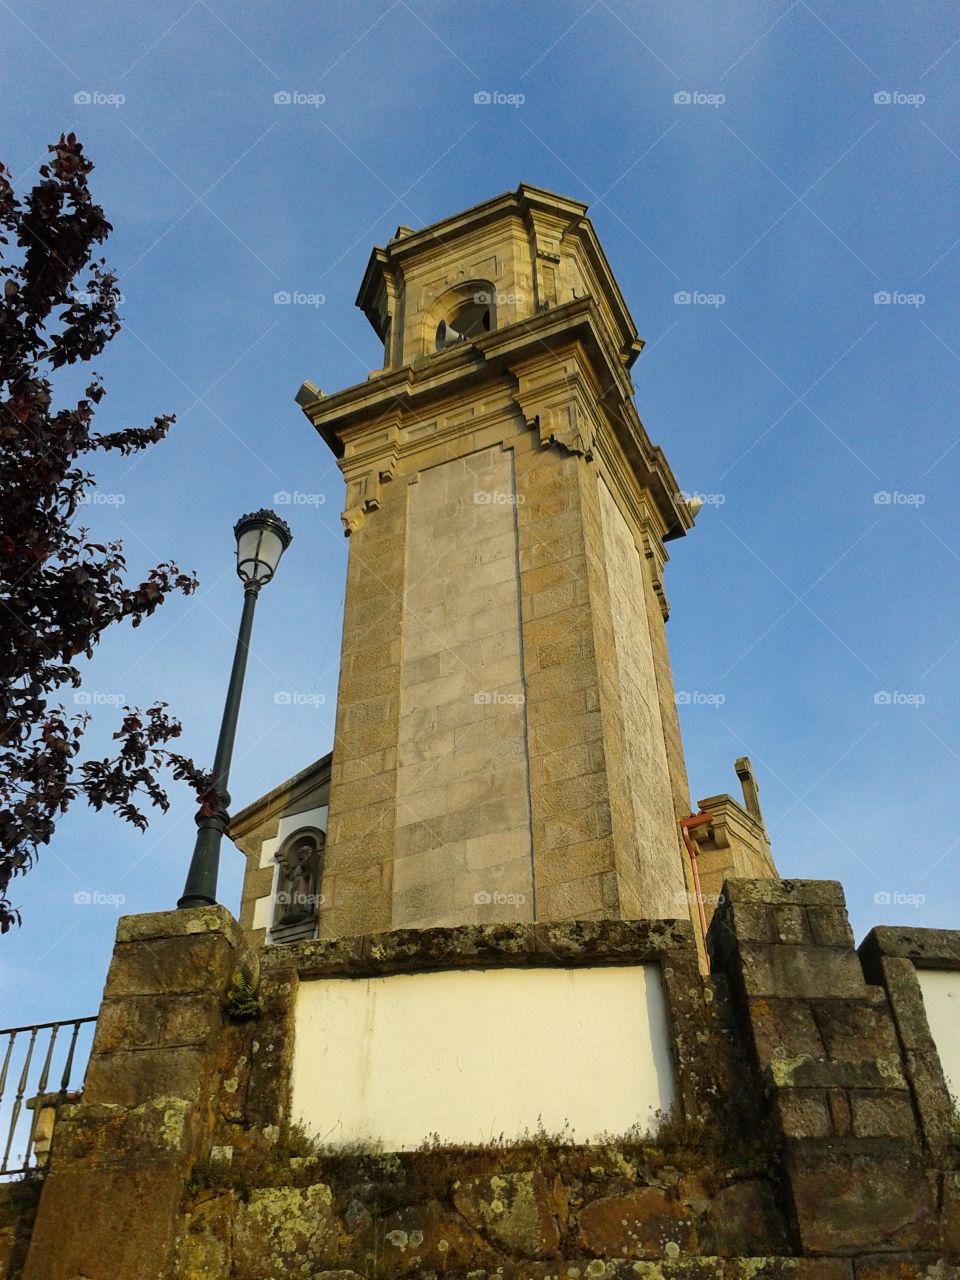 Old tower of "La Guia" in Vigo